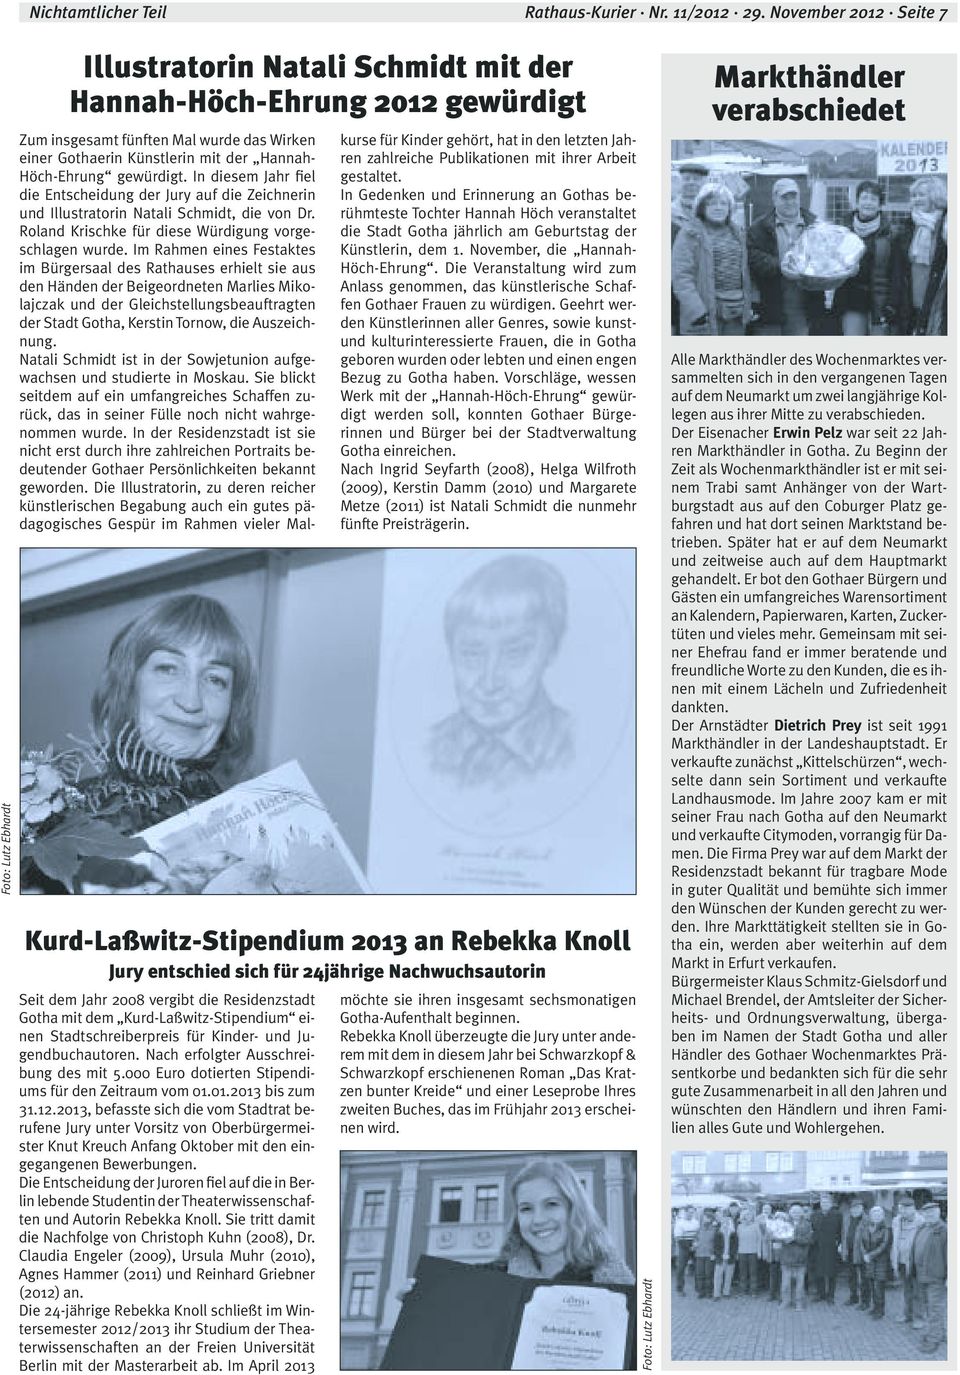 Nachwuchsautorin Seit dem Jahr 2008 vergibt die Residenzstadt Gotha mit dem Kurd-Laßwitz-Stipendium einen Stadtschreiberpreis für Kinder- und Jugendbuchautoren. Nach erfolgter Ausschreibung des mit 5.